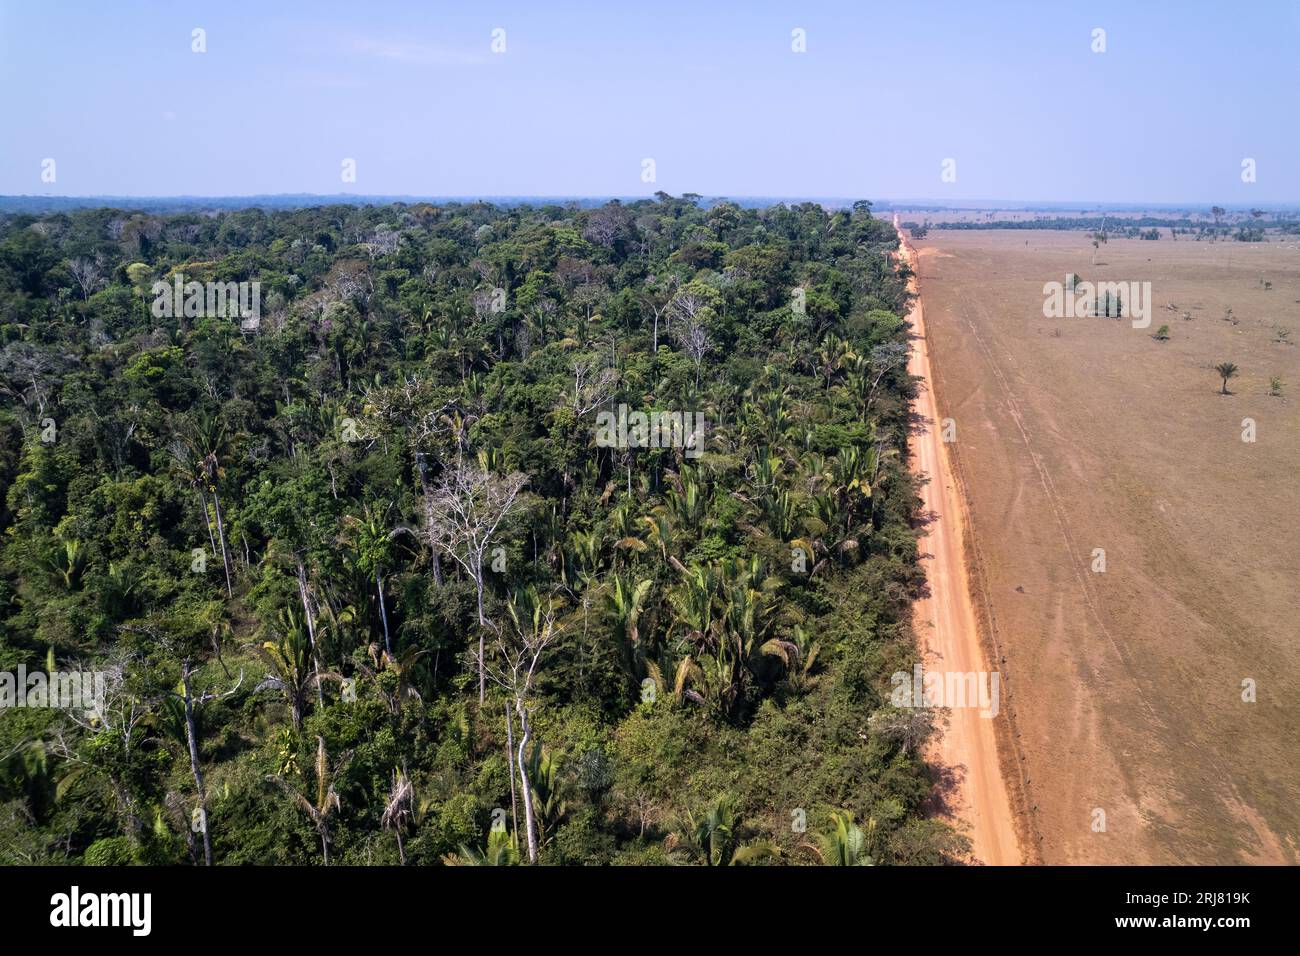 Vogelperspektive auf wunderschöne Amazonas-Regenwaldbäume und Entwaldung, um Land für Rinder in Viehzucht zu öffnen. Amazonas, Brasilien. Umgebung. Stockfoto